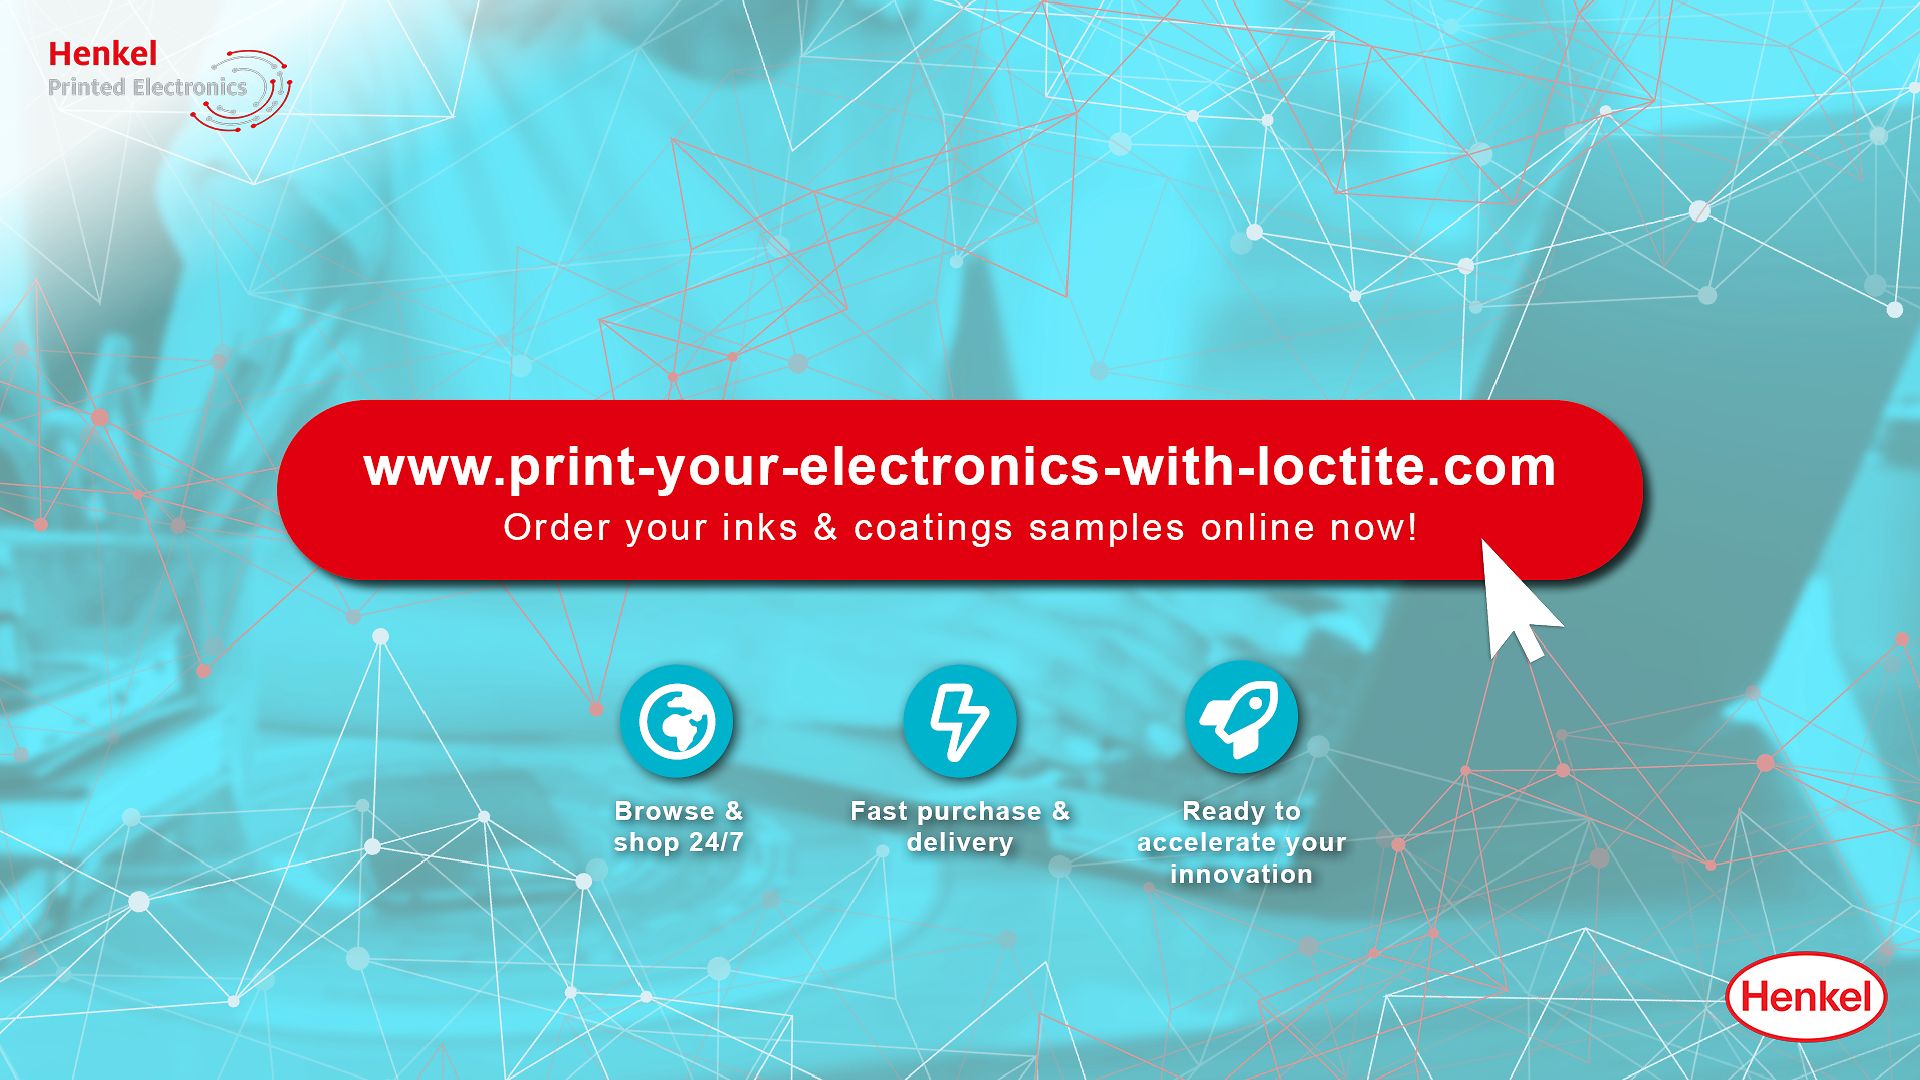 Henkel hat einen neuen Online-Shop für Produktmuster für gedruckte Elektronik gestartet: www.print-your-electronics-with-loctite.com.